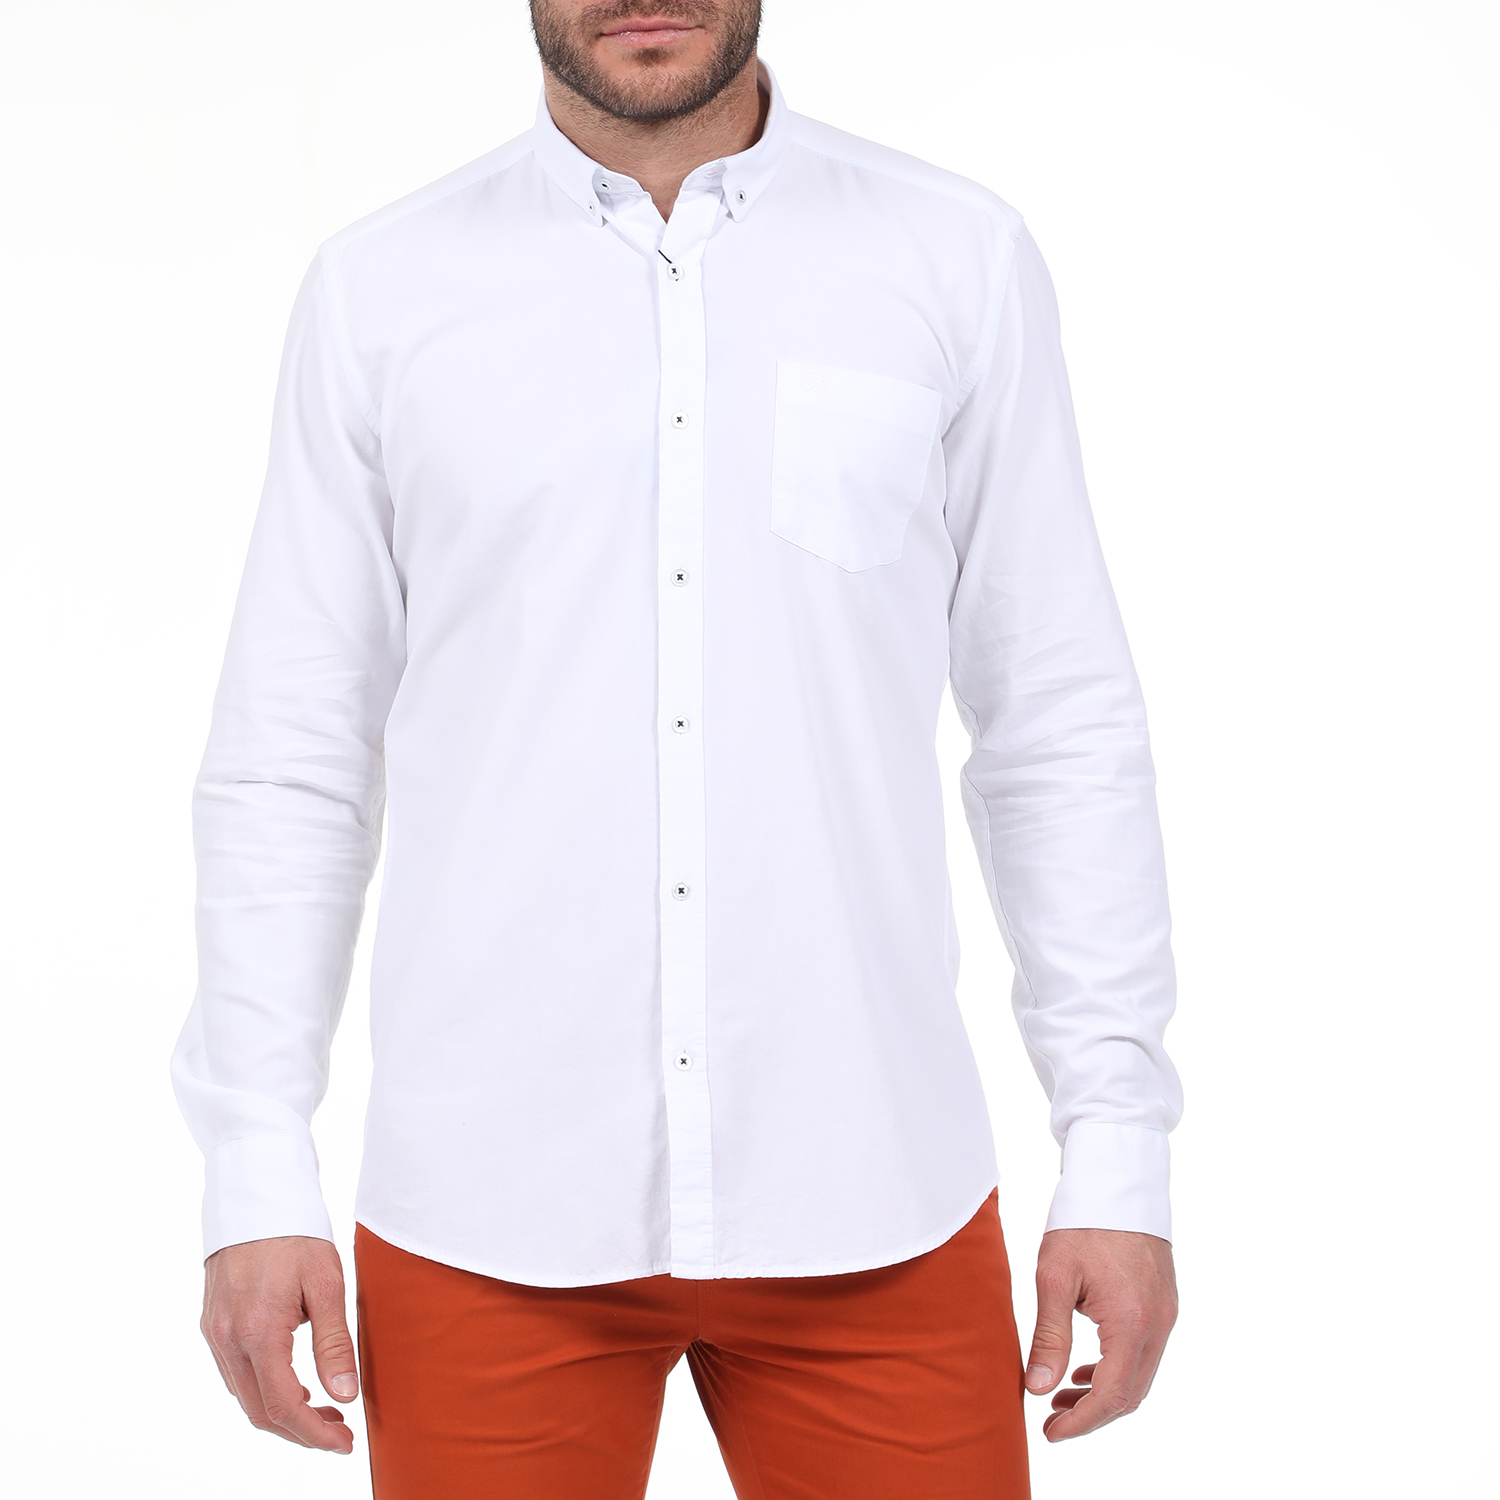 Ανδρικά/Ρούχα/Πουκάμισα/Μακρυμάνικα DORS - Ανδρικό πουκάμισο DORS λευκό